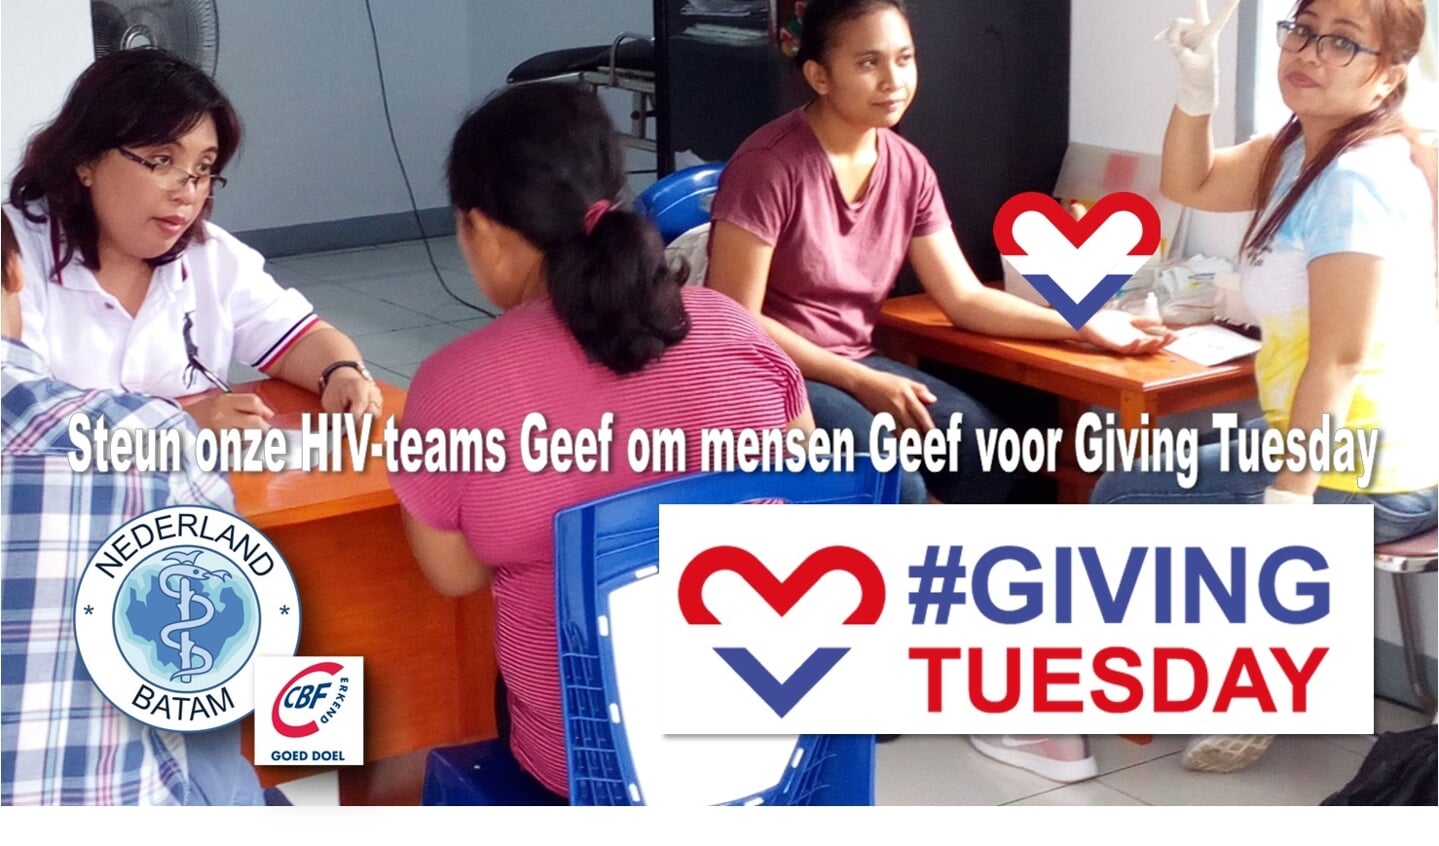 Stichting Nederland-Batam lanceert haar Giving Tuesday campagne en vraagt aandacht voor haar HIV-teams in Indonesië.